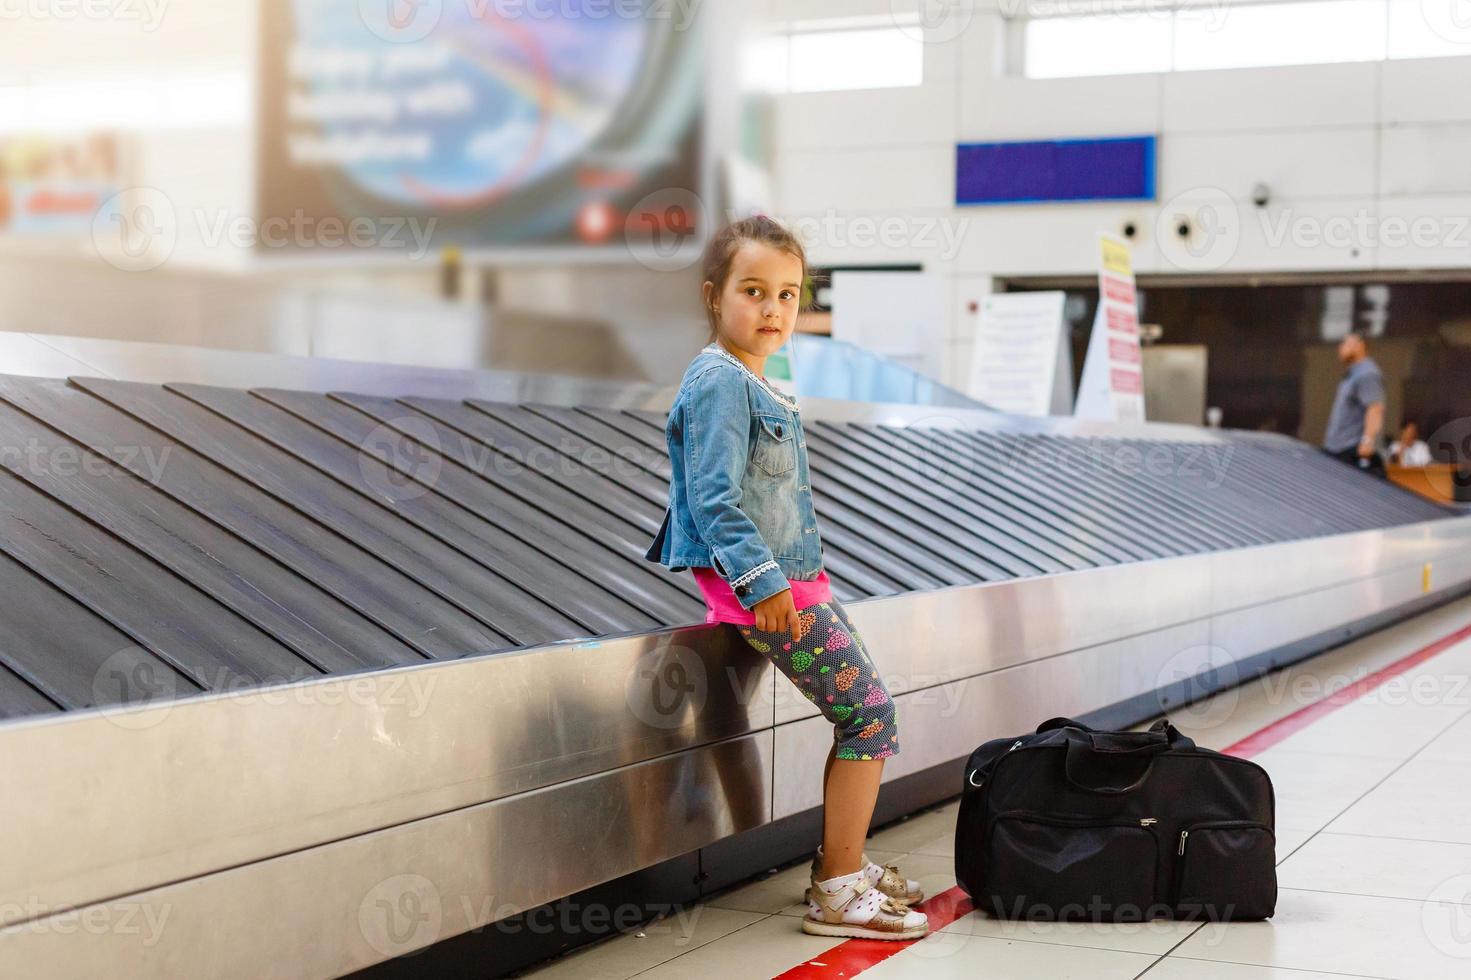 le fille séance à le aéroport sur le ruban pour bagage, lequel est situé près le réception. Regardez une façon photo